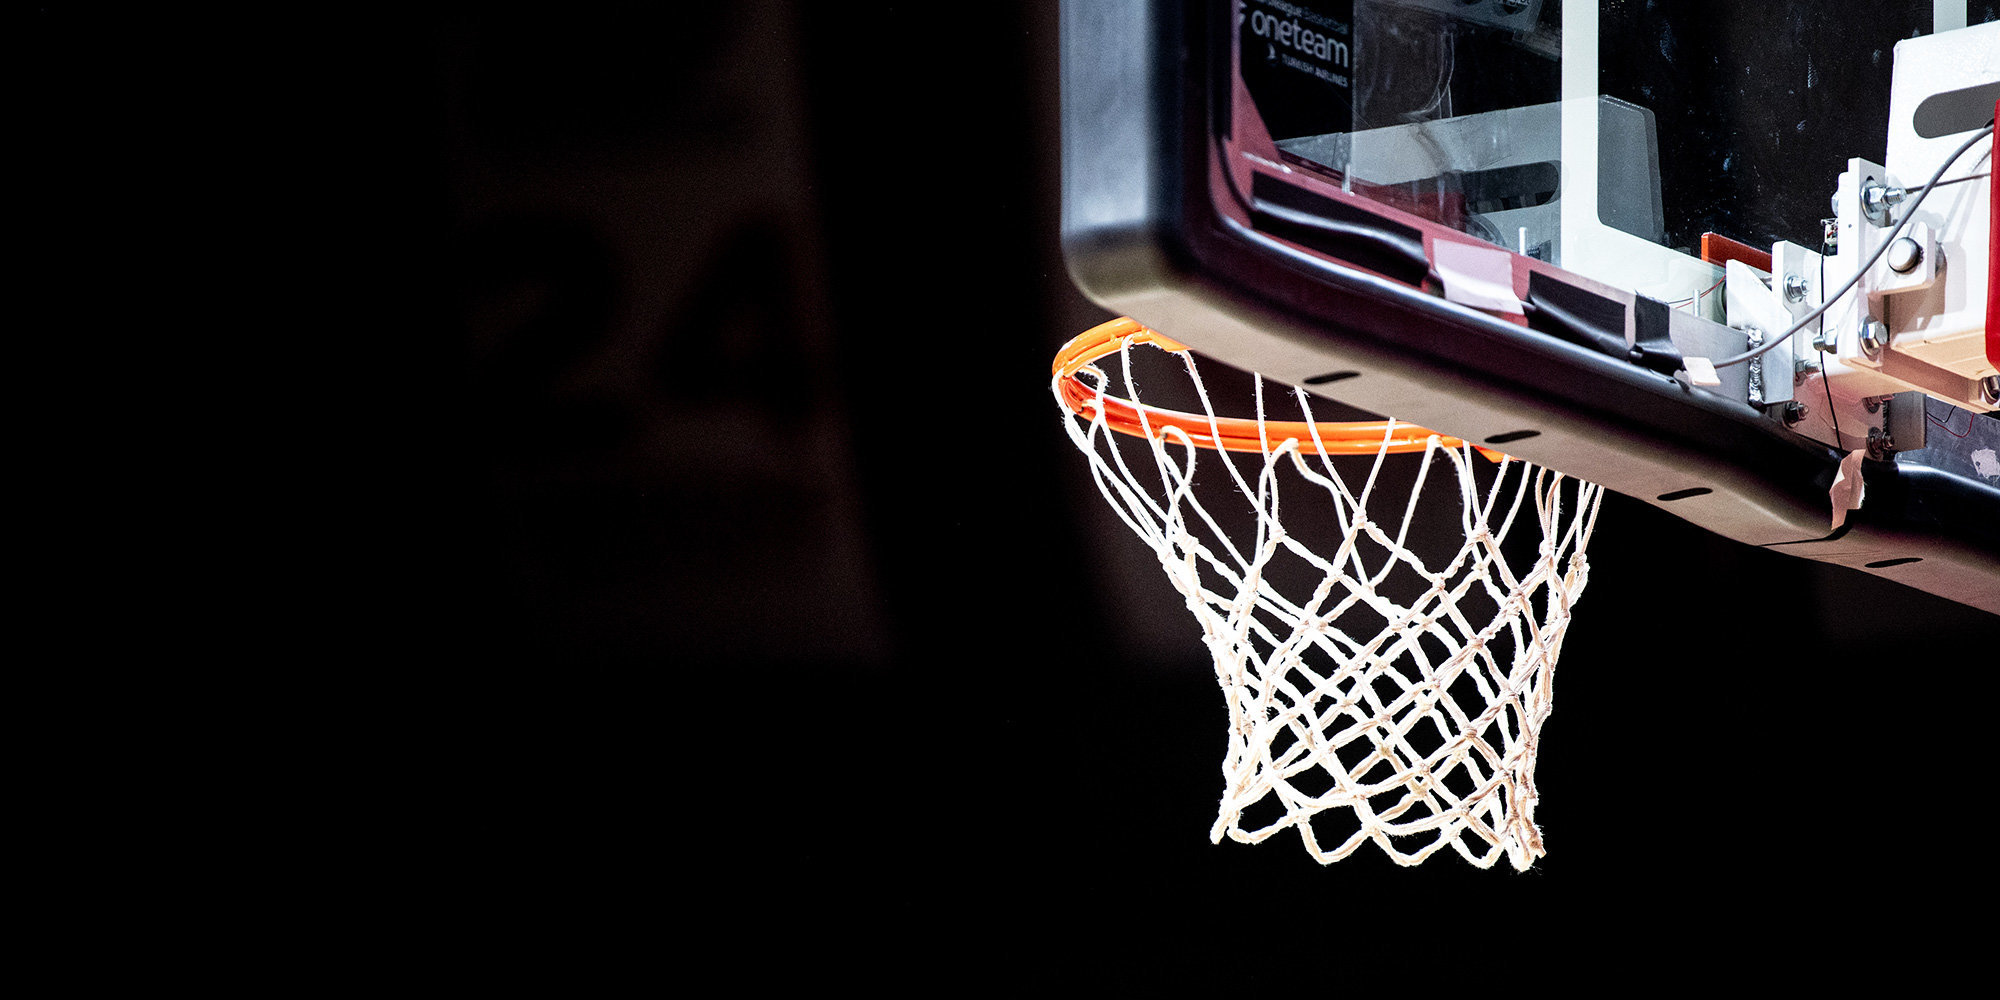 «Баскетбольный сезон будет непредсказуемым, но сейчас проще, чем в пандемию» — Абросимова